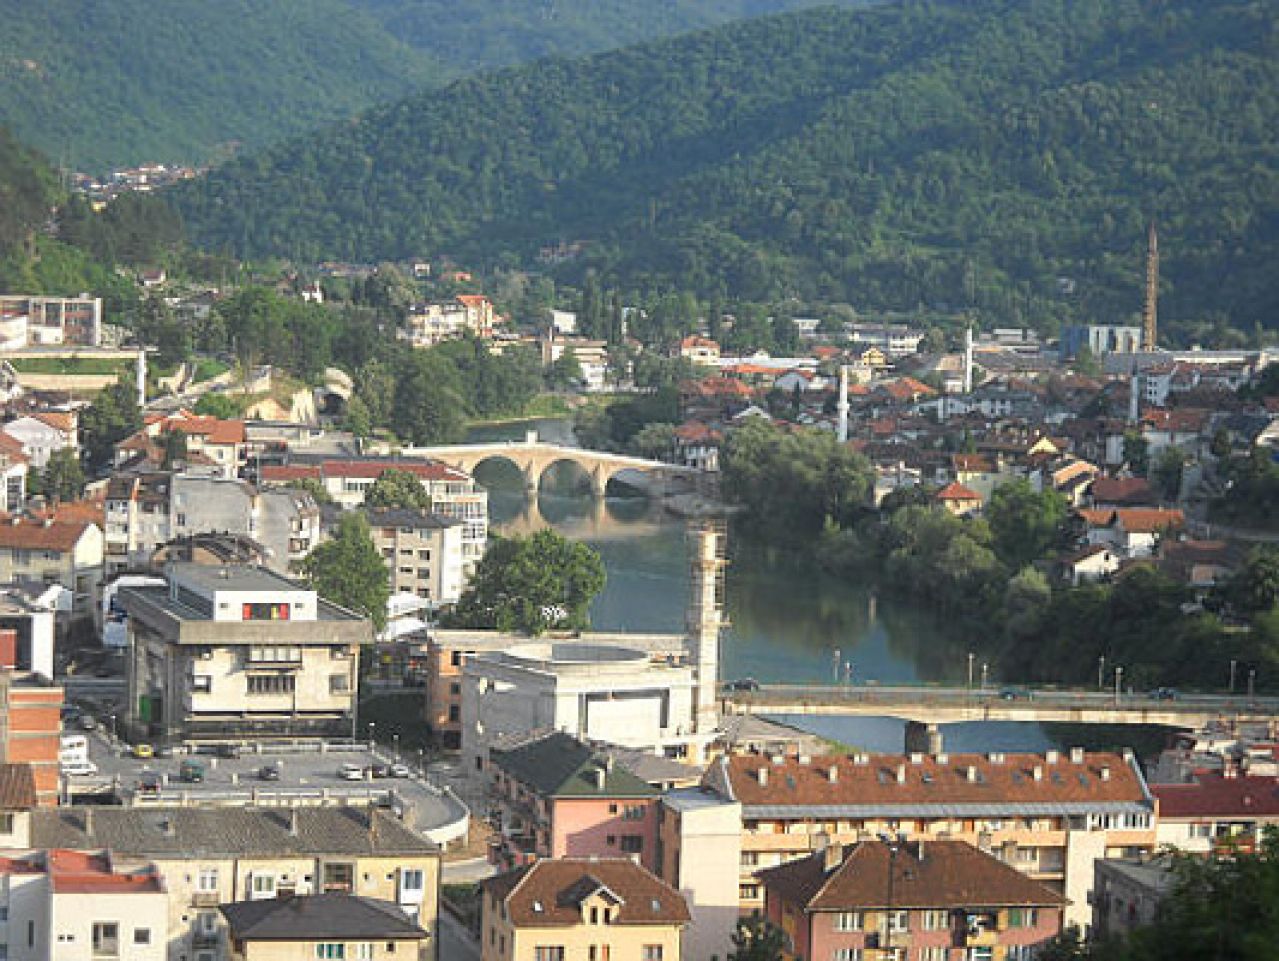 Jablanica i Konjic primjer kako se odnositi prema kulturno-povijesnom naslijeđu